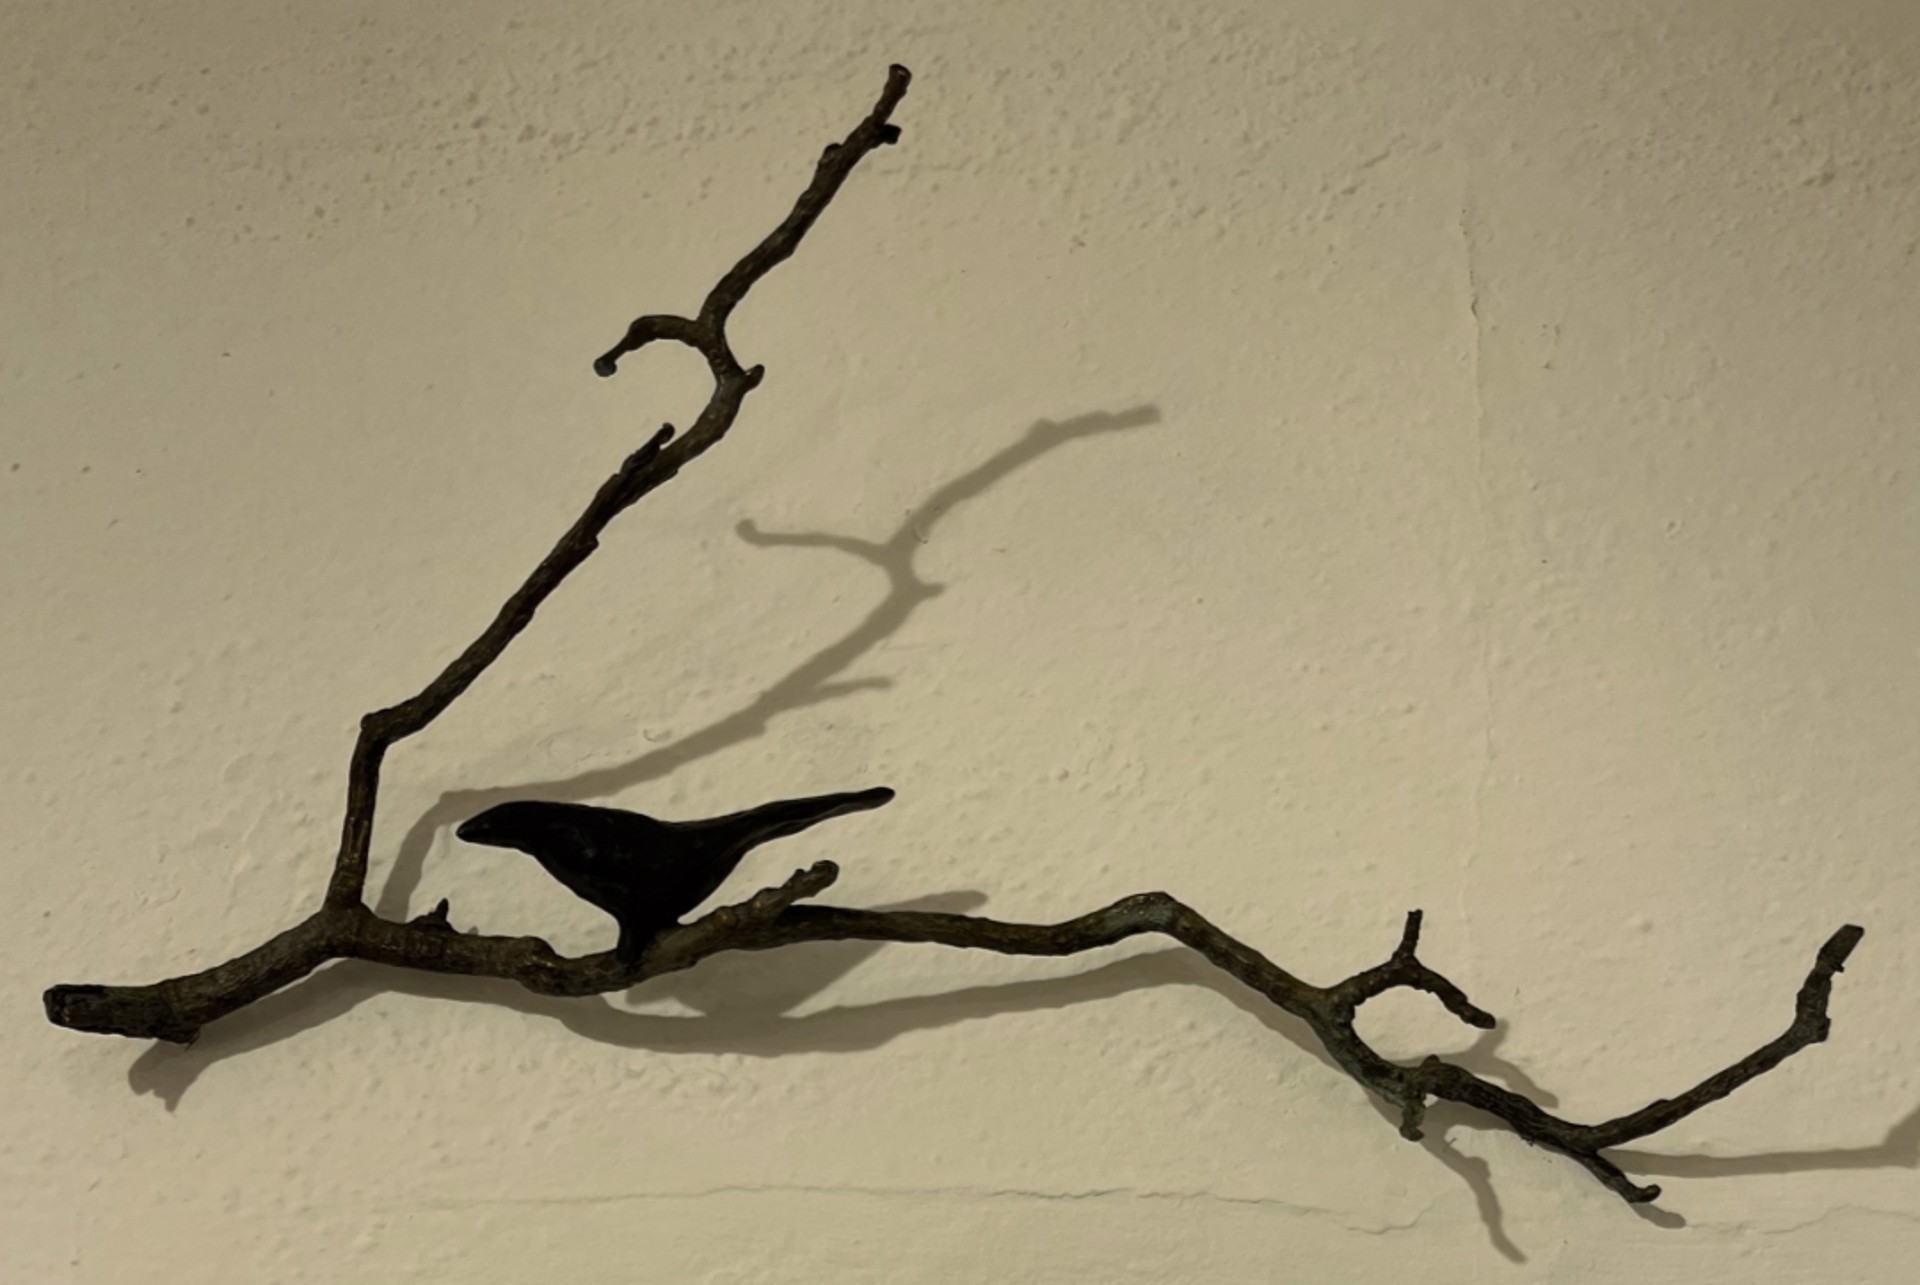 1 Blackbird on a Branch by Copper Tritscheller